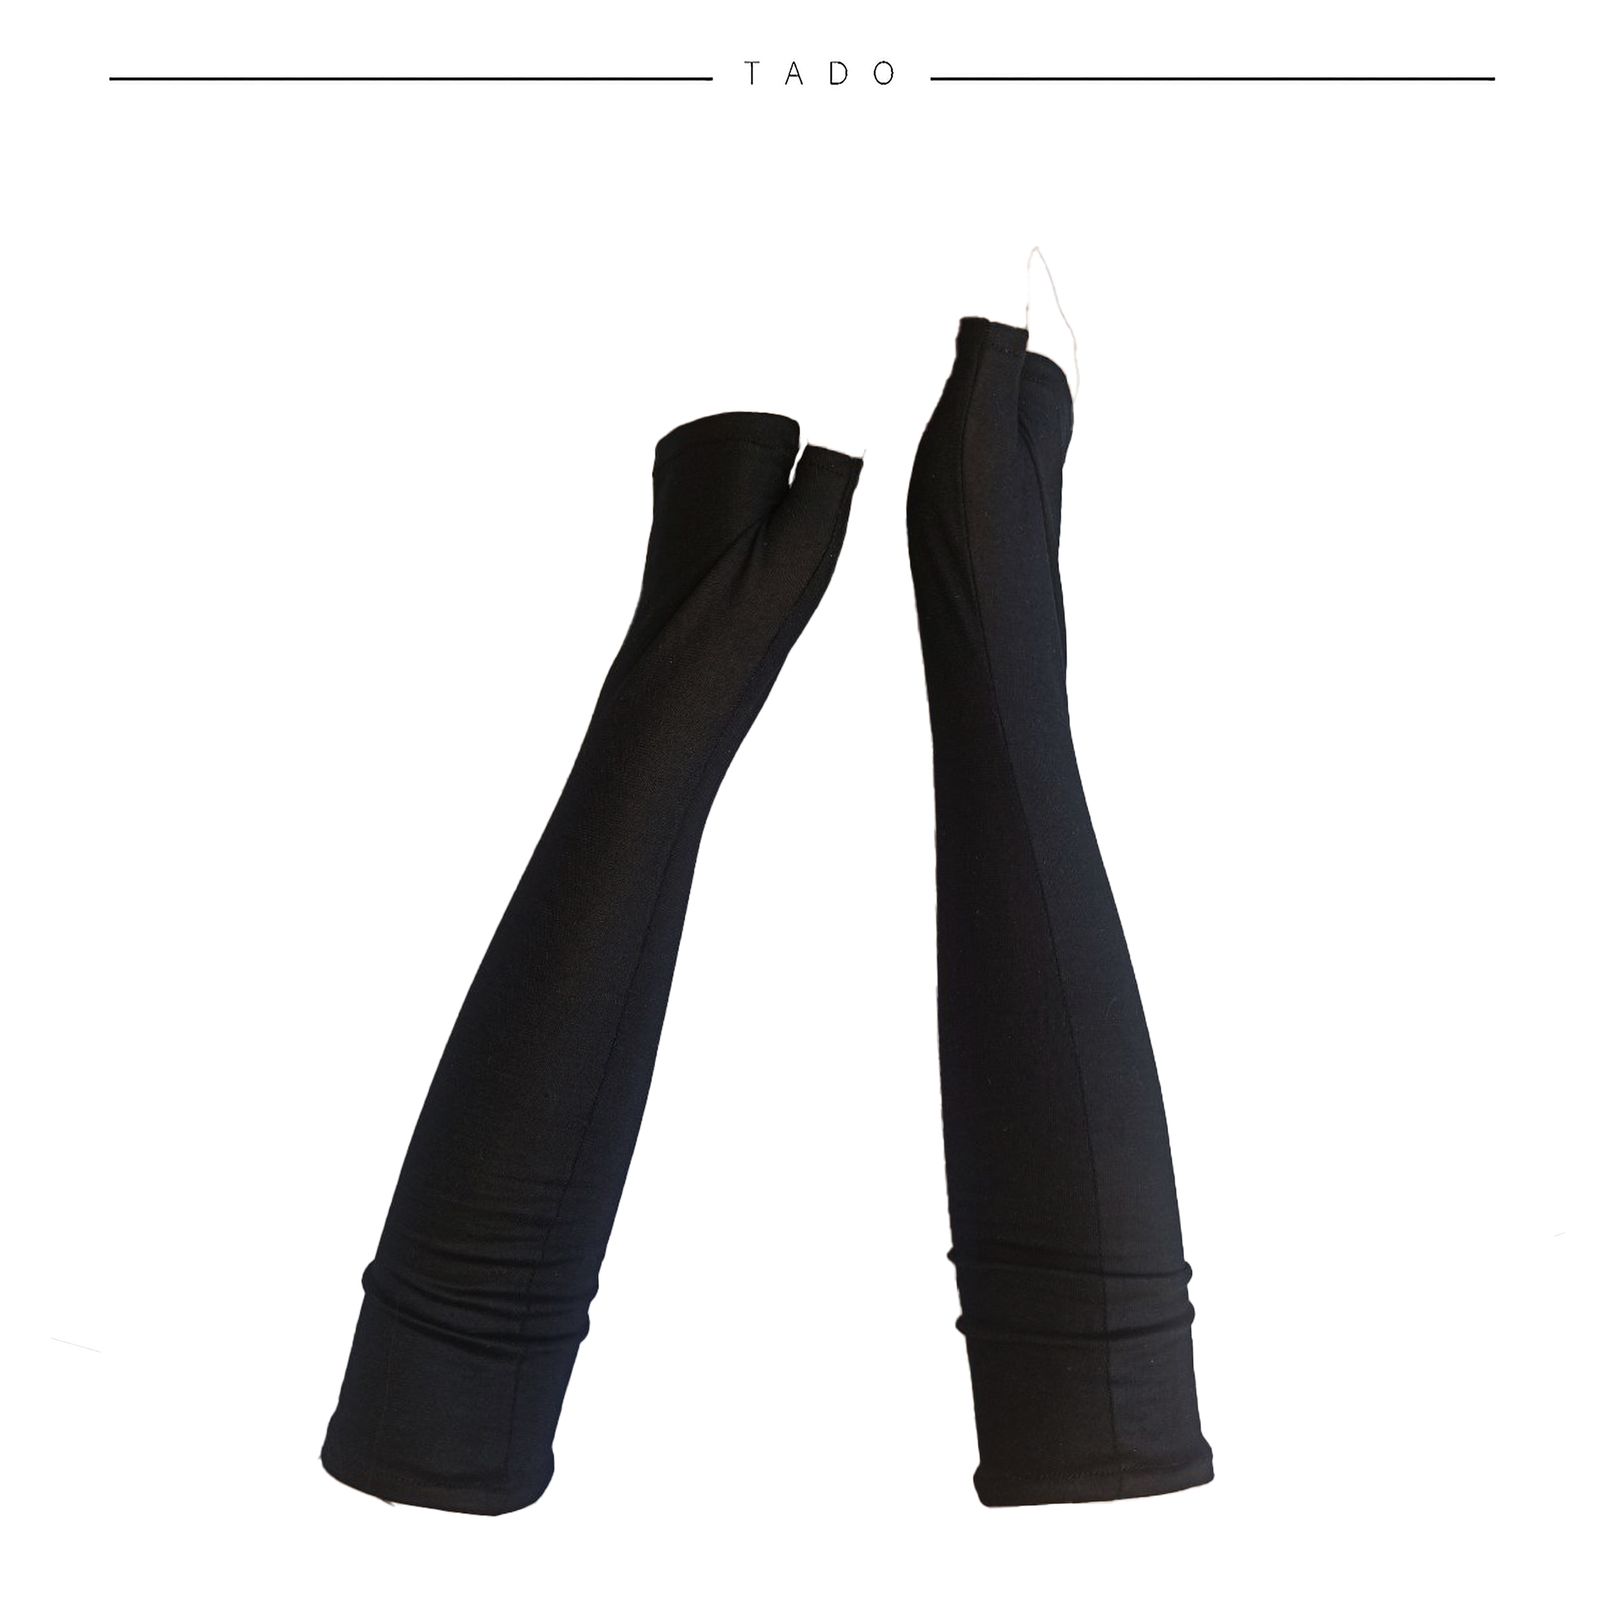 ساق دست ورزشی تادو طرح فینگرلس مدل TL321 -  - 5